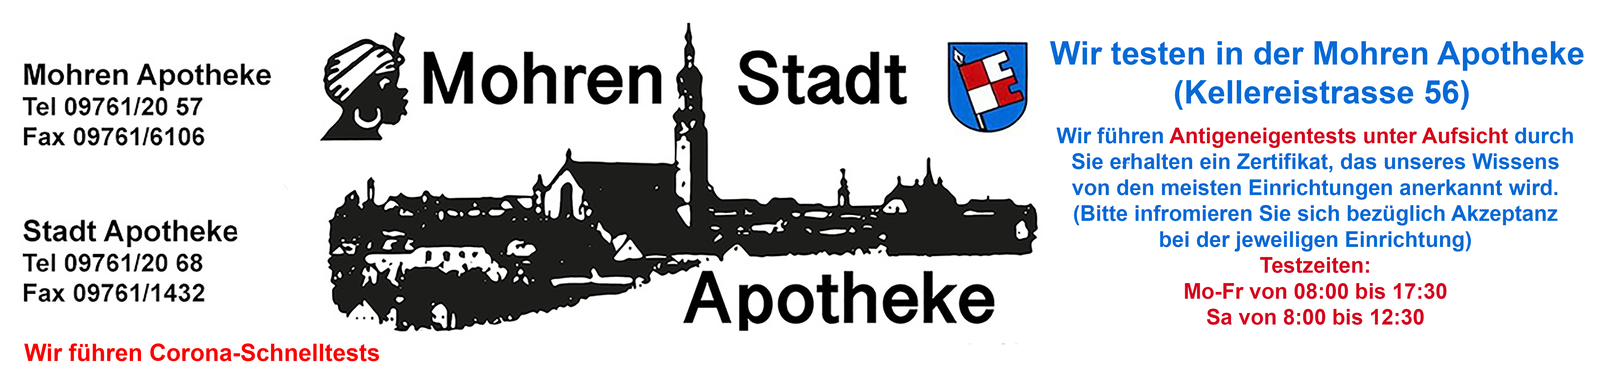 Logo der Mohren Apotheke